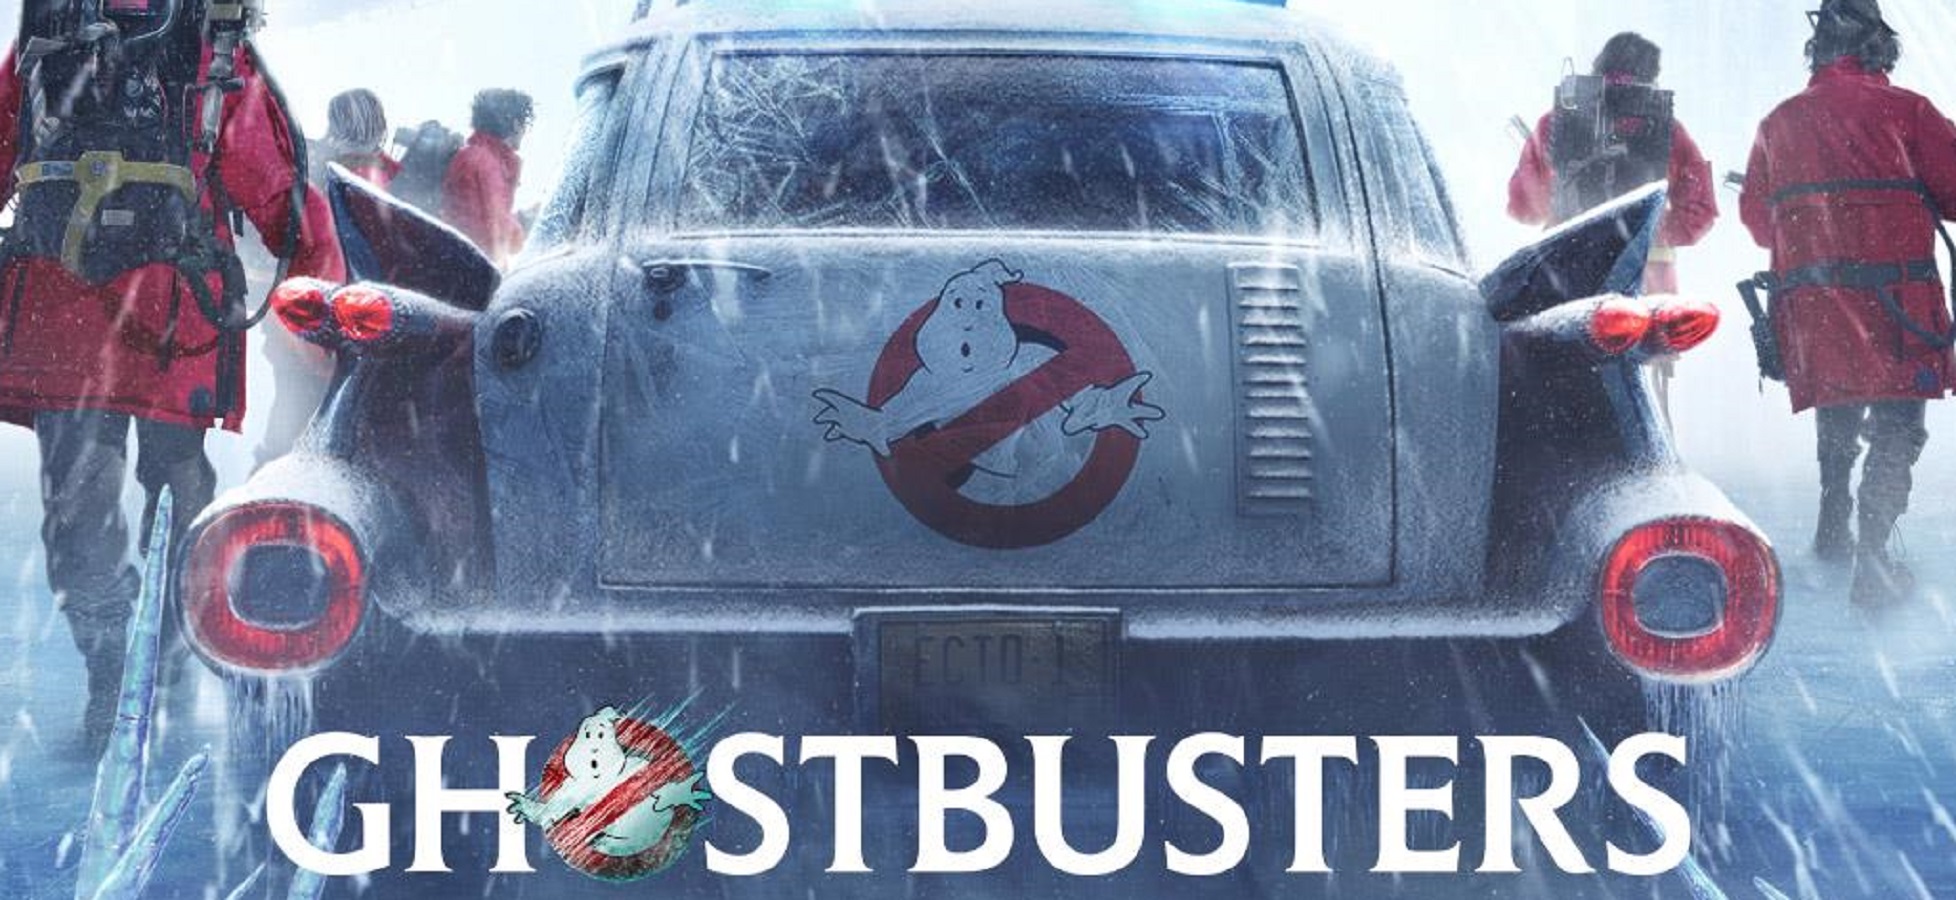 La Ecto 1 dei Ghostbusters al Centro Commerciale Campania Marcianise.jpg